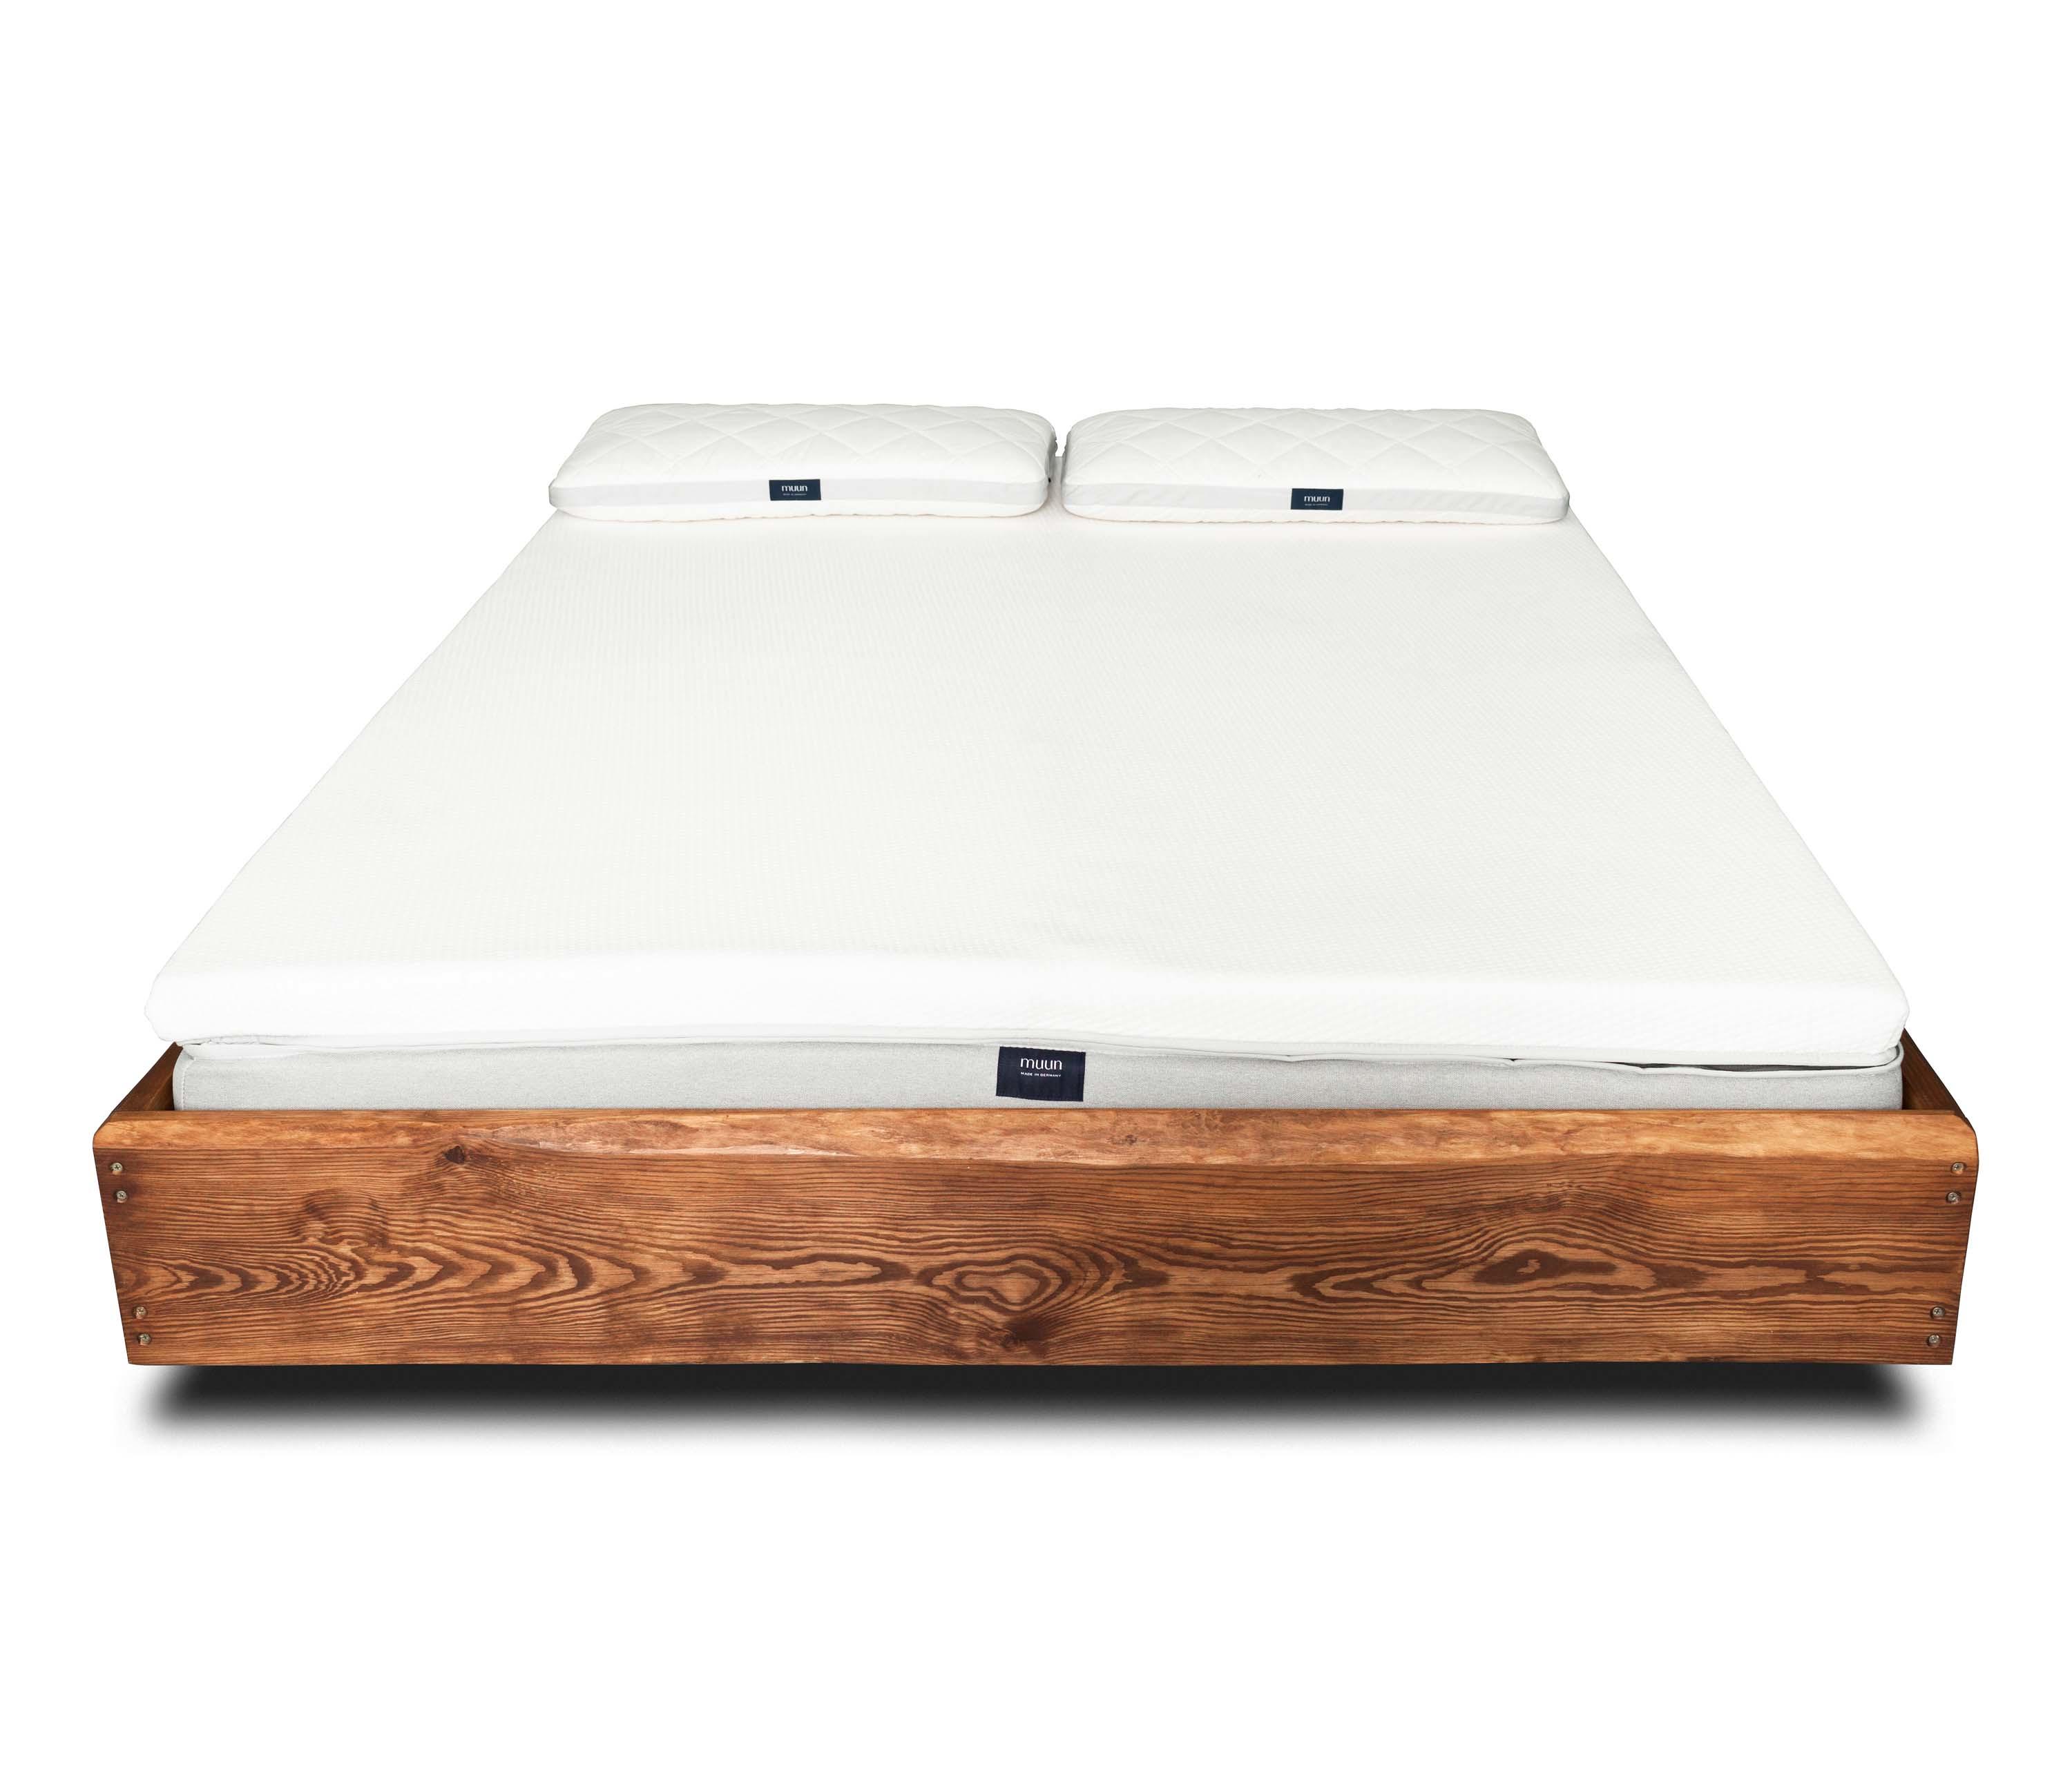 Castellet Floating Bed Designer, White Floating Bed Frame